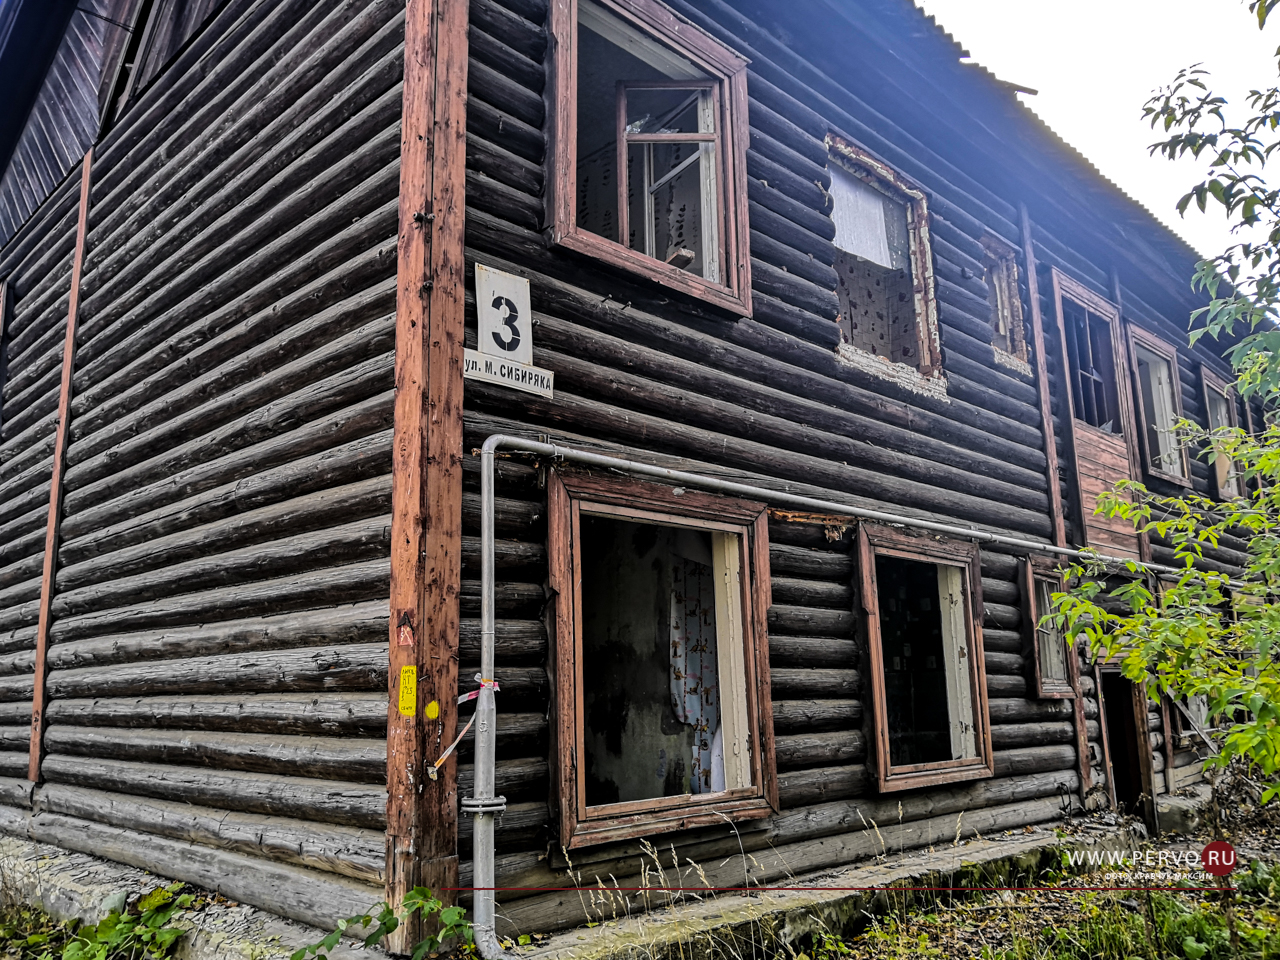 15 аварийных домов Первоуральска будут расселены до 2025 года